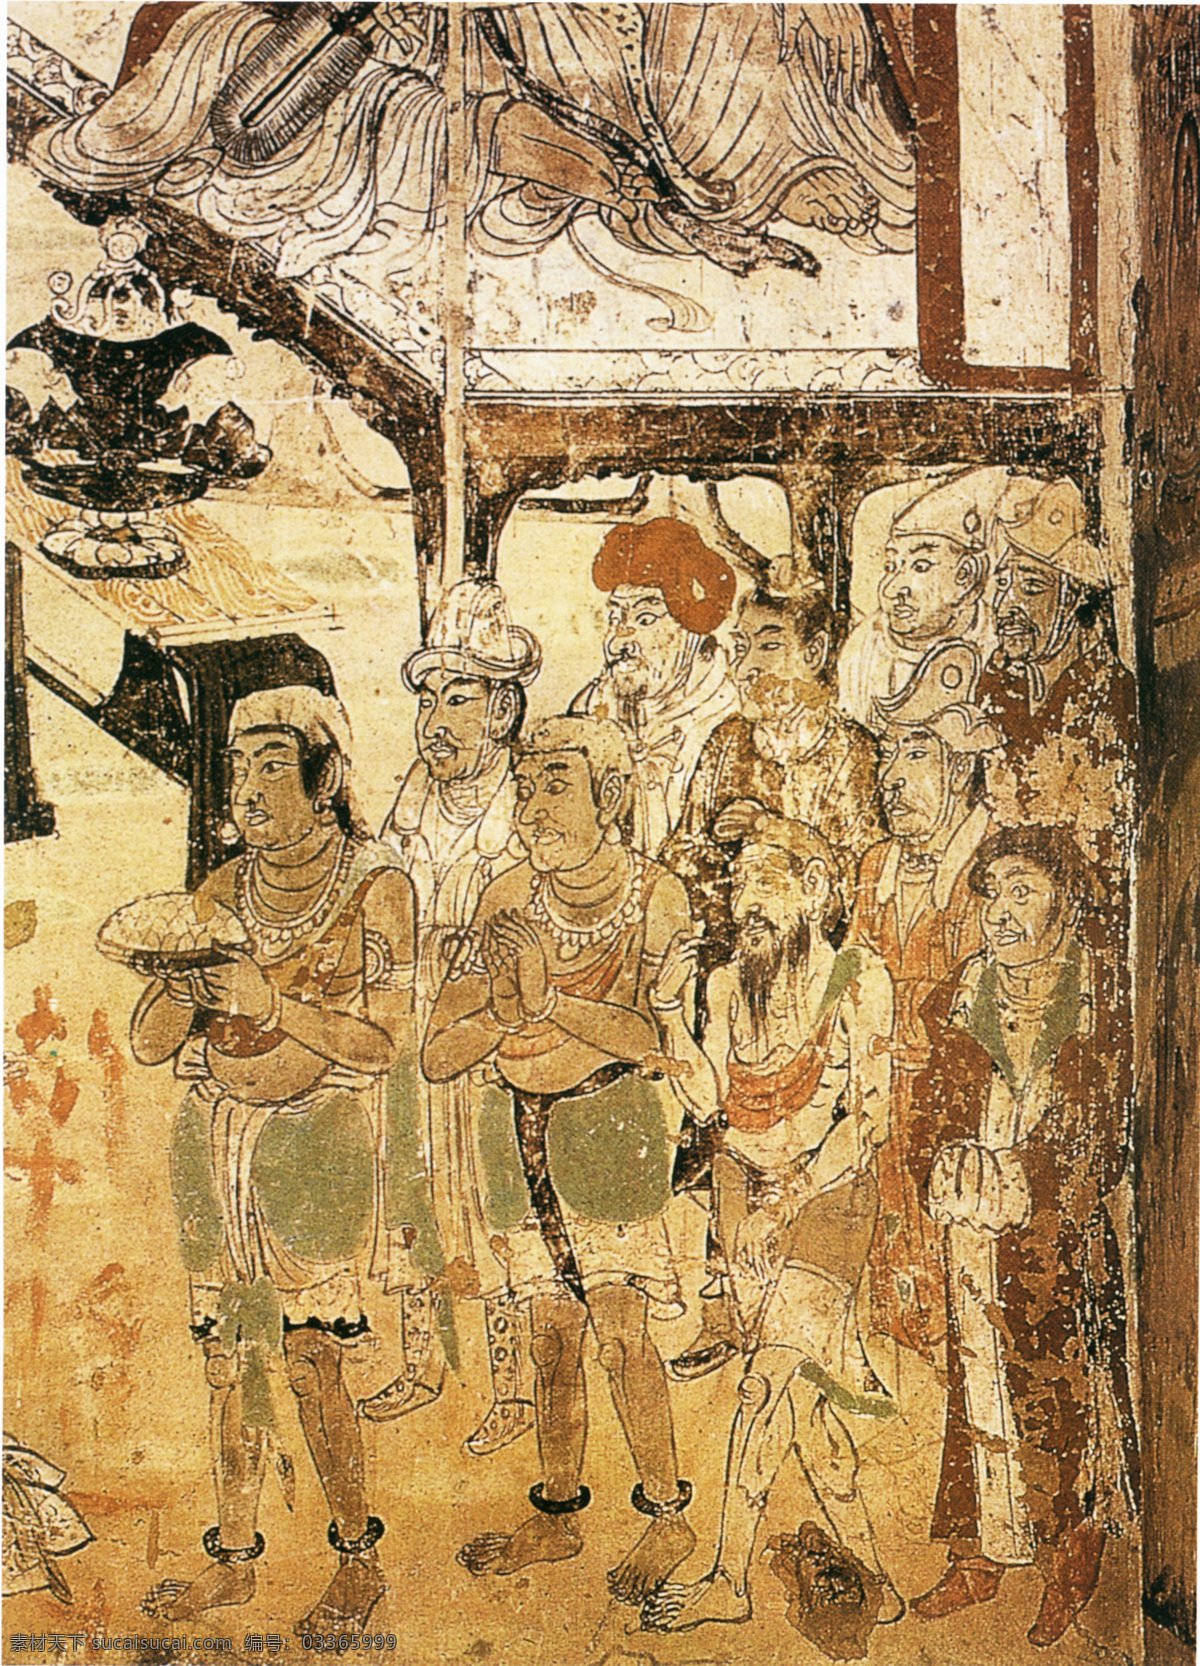 各国供养人 人物画 中国 古画 中国古画 设计素材 人物名画 古典藏画 书画美术 黄色